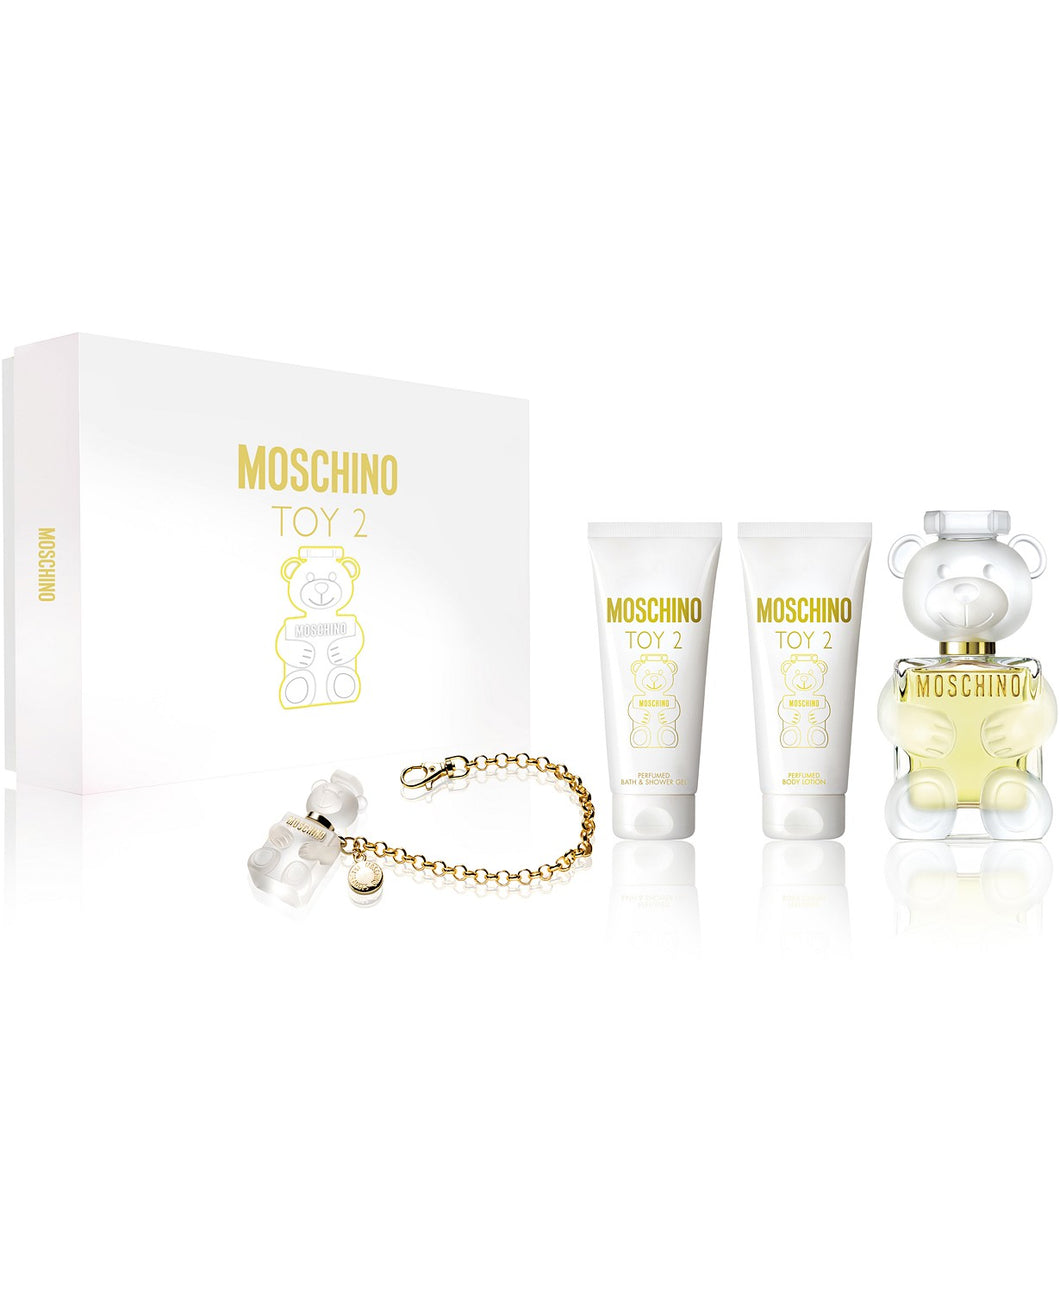 moschino toy 2 gift set 4 pcs eau de parfum 3.4oz for womens - alwaysspecialgifts.com